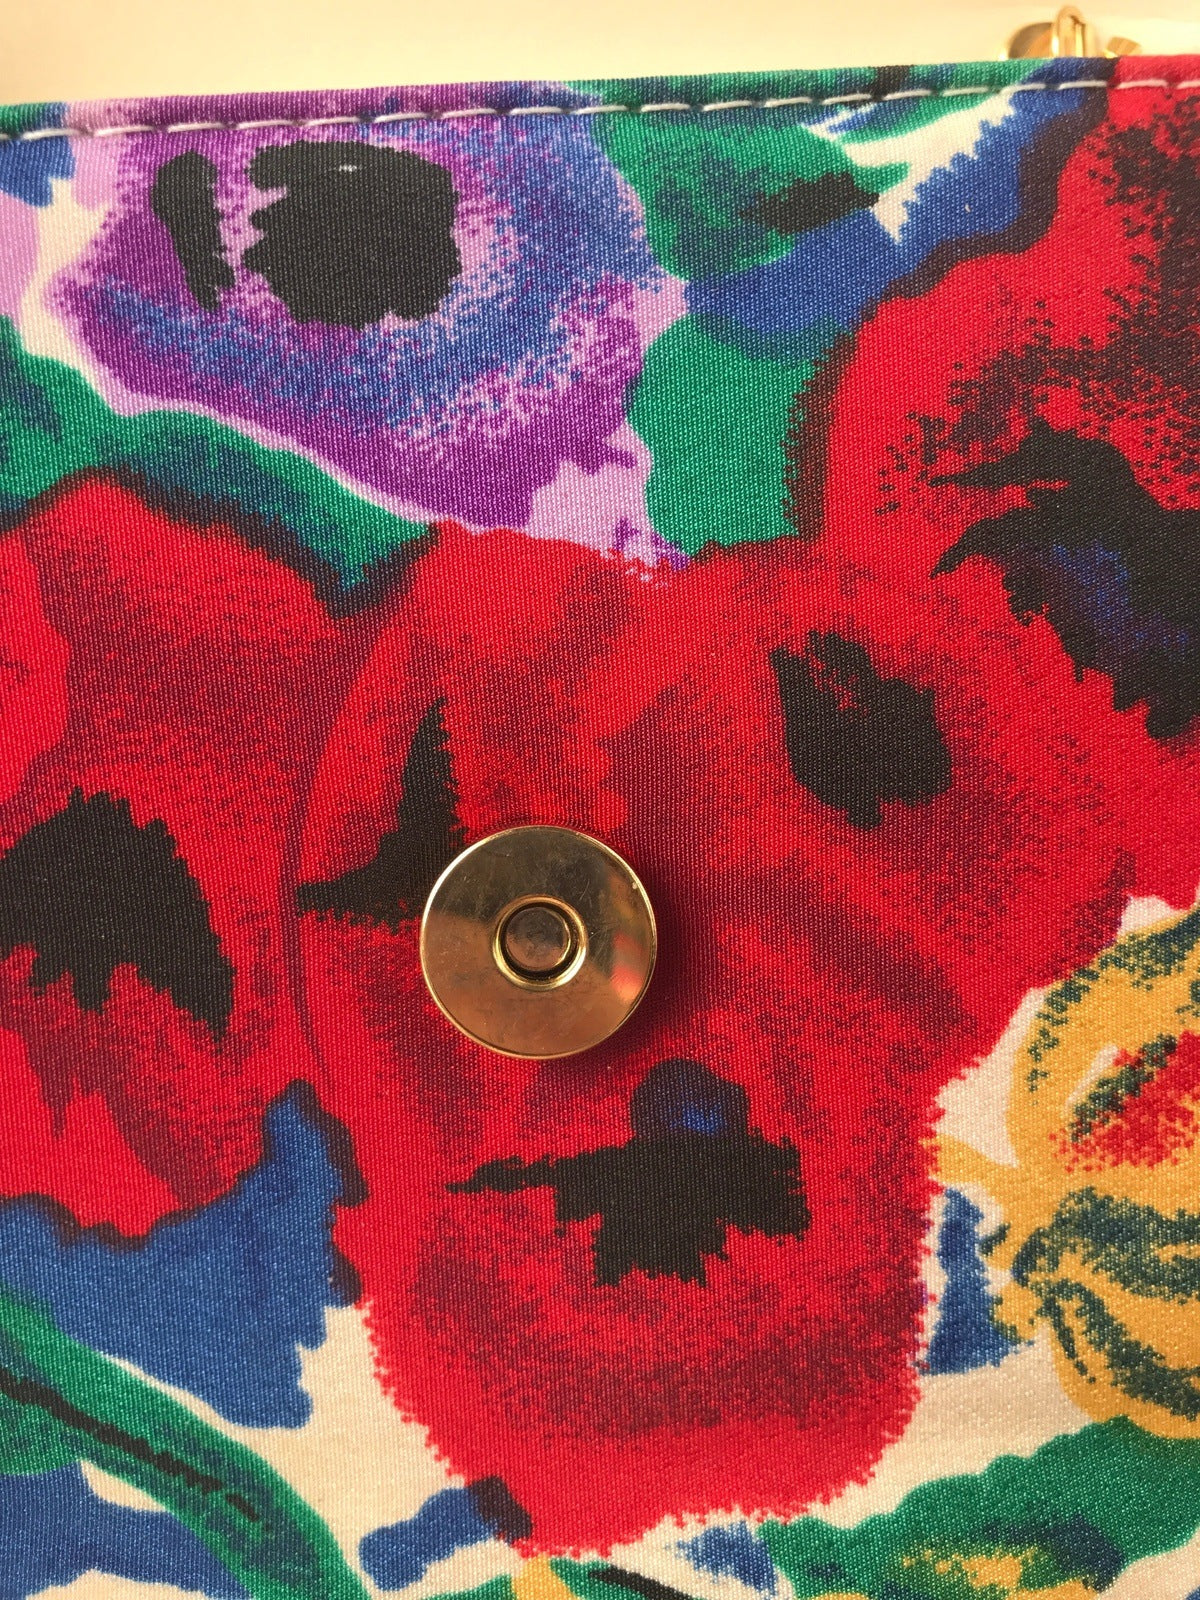 J. Reneé Purse Bag Colorful Floral Handbag Vintage Accessories